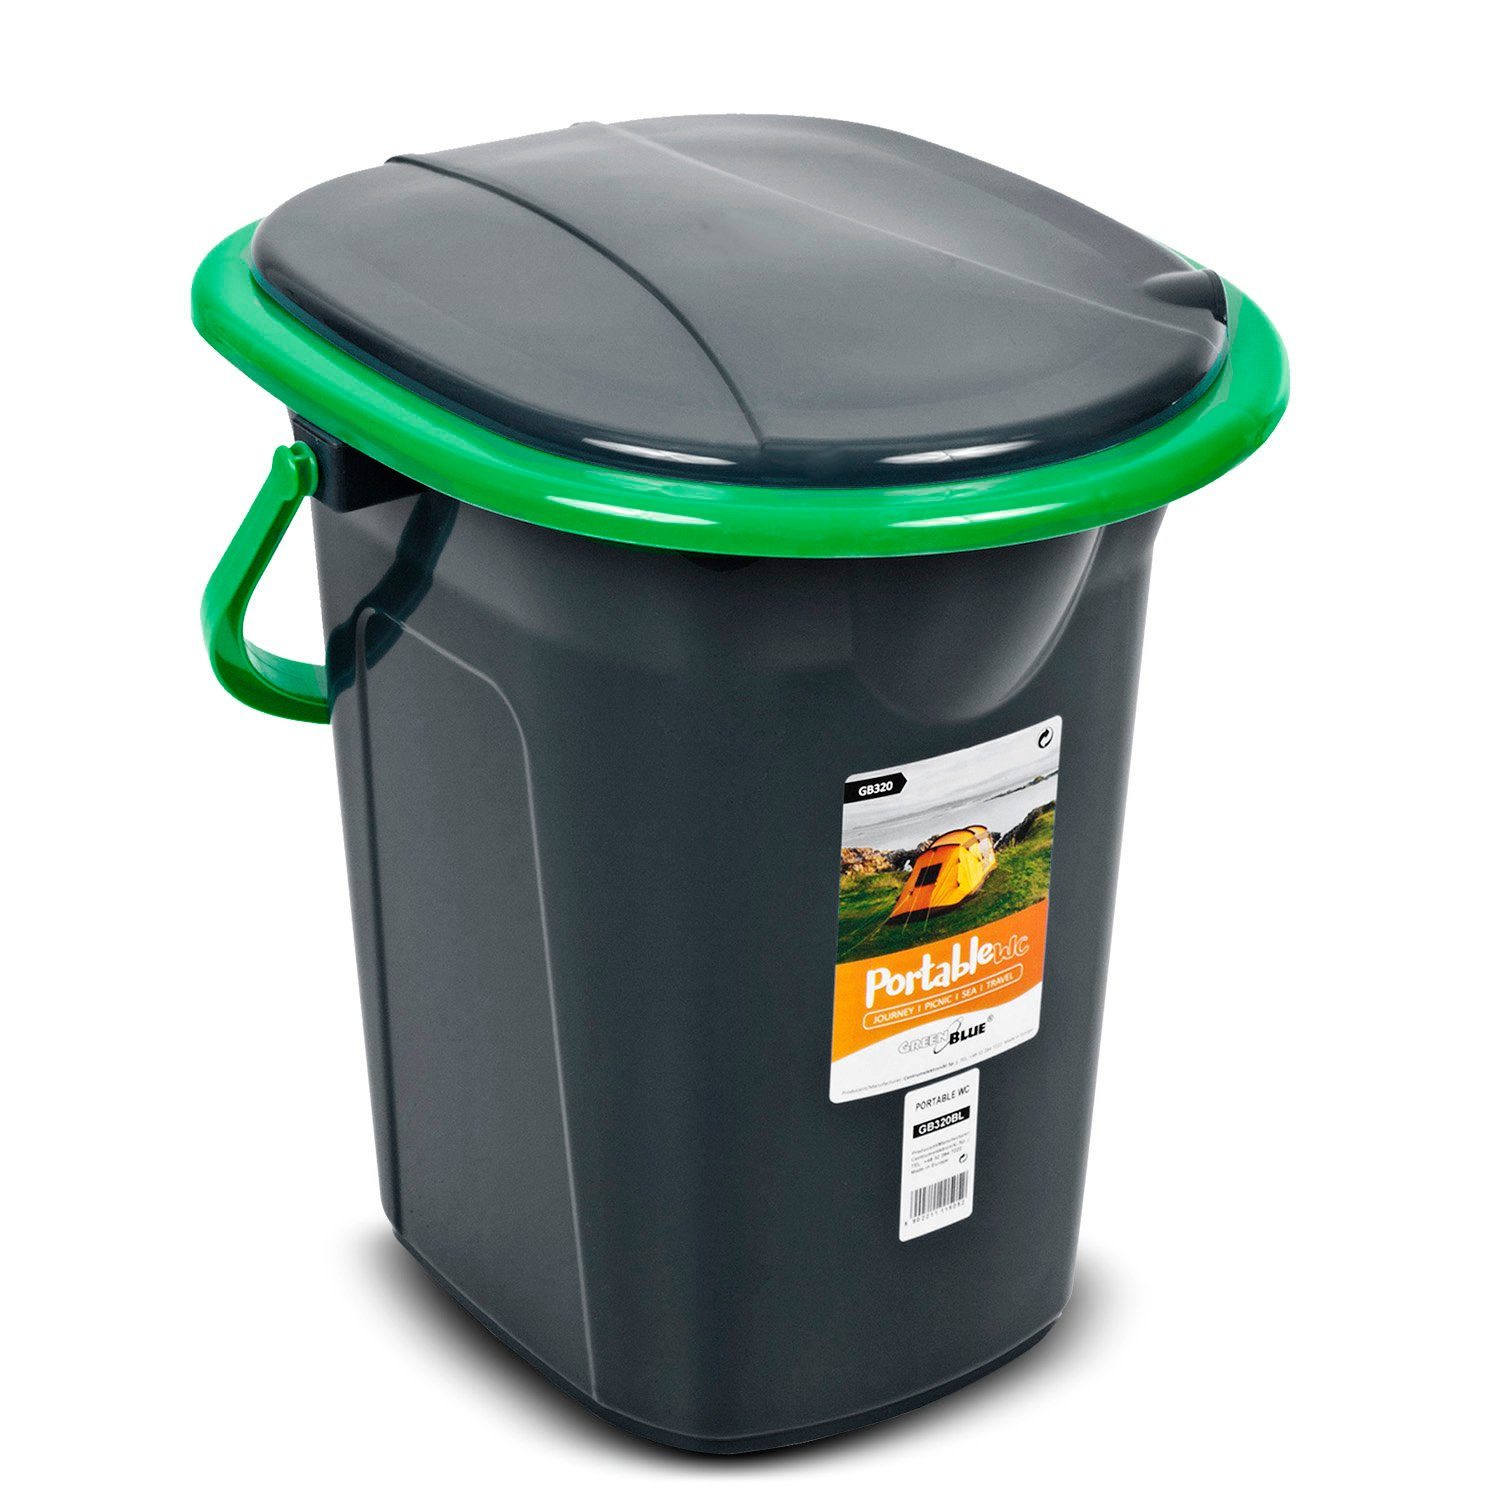 GreenBlue Campingtoilette GB320, mit Tragegriff / Toilettenpapierhalter und Auskipp-Hilfe Schwarz-Grün